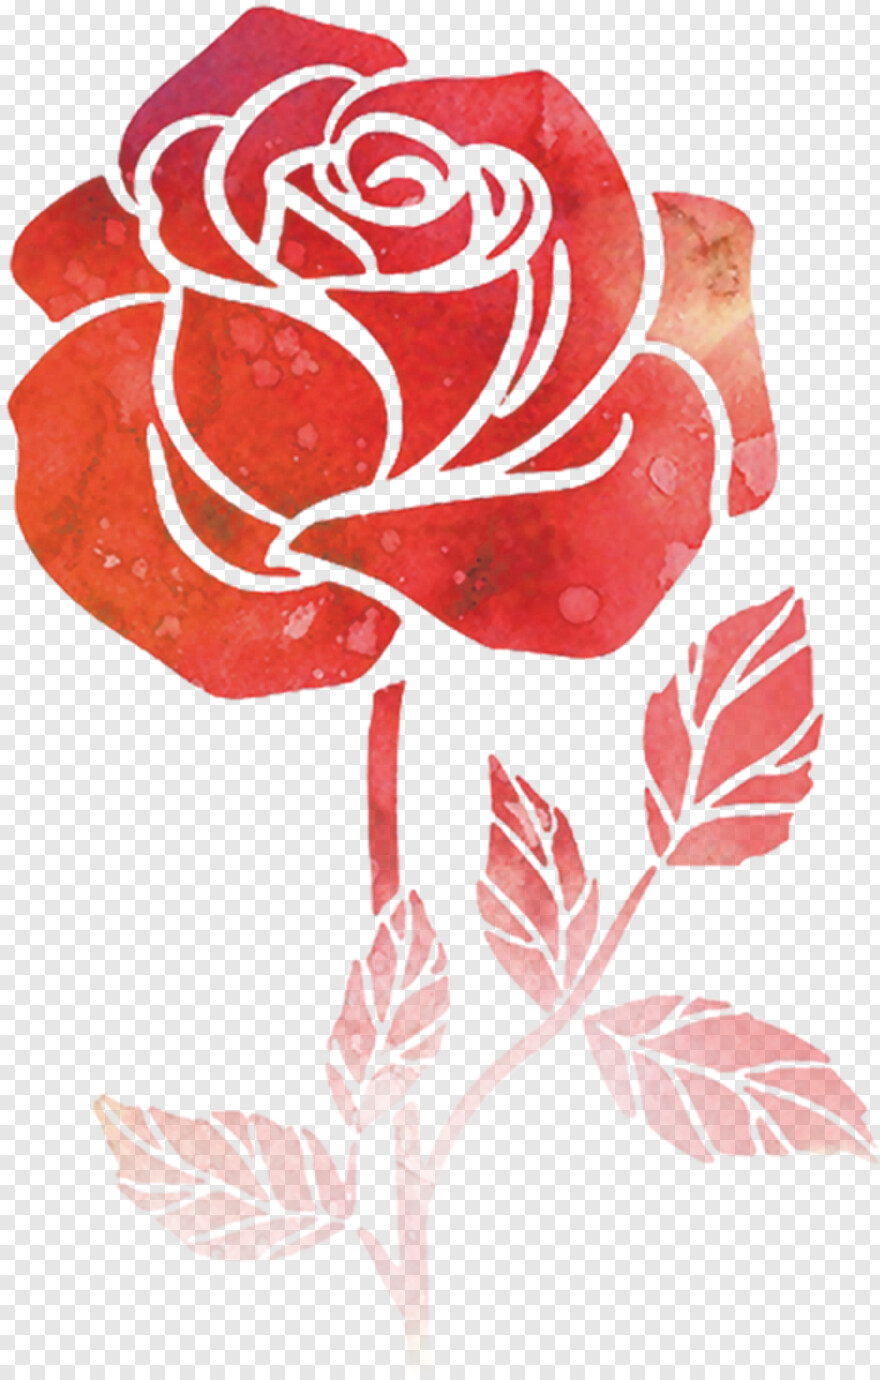  Rose Drawing, Pink Rose Flower, Single Rose Flower, Rose Flower Vector, Rose Flower, Watercolor Rose